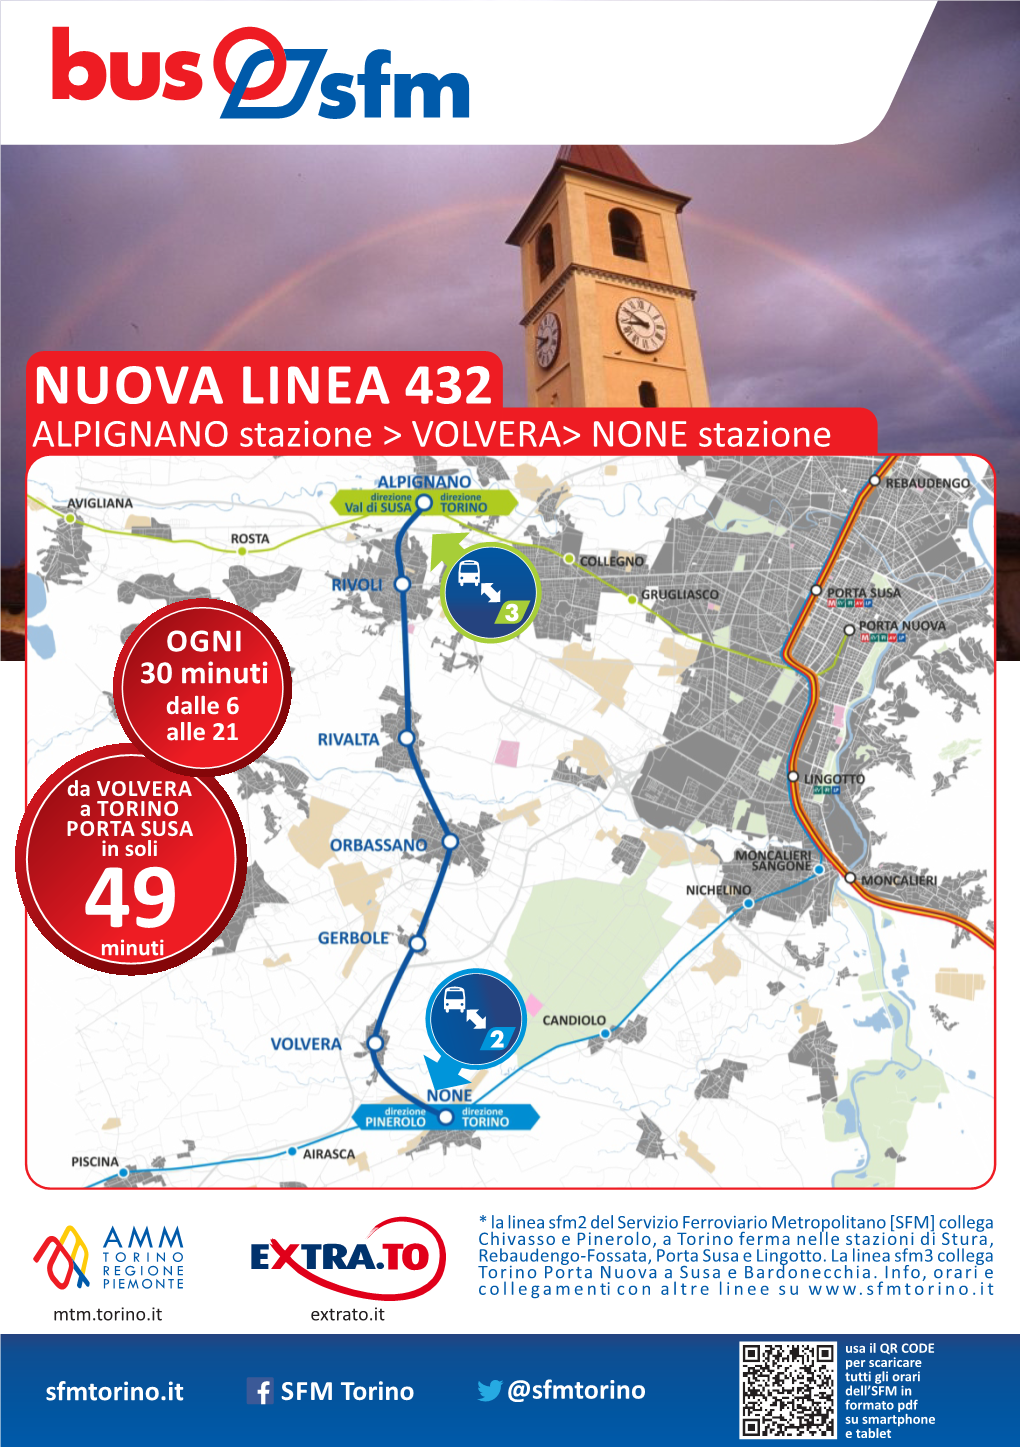 NUOVA LINEA 432 ALPIGNANO Stazione > VOLVERA> NONE Stazione